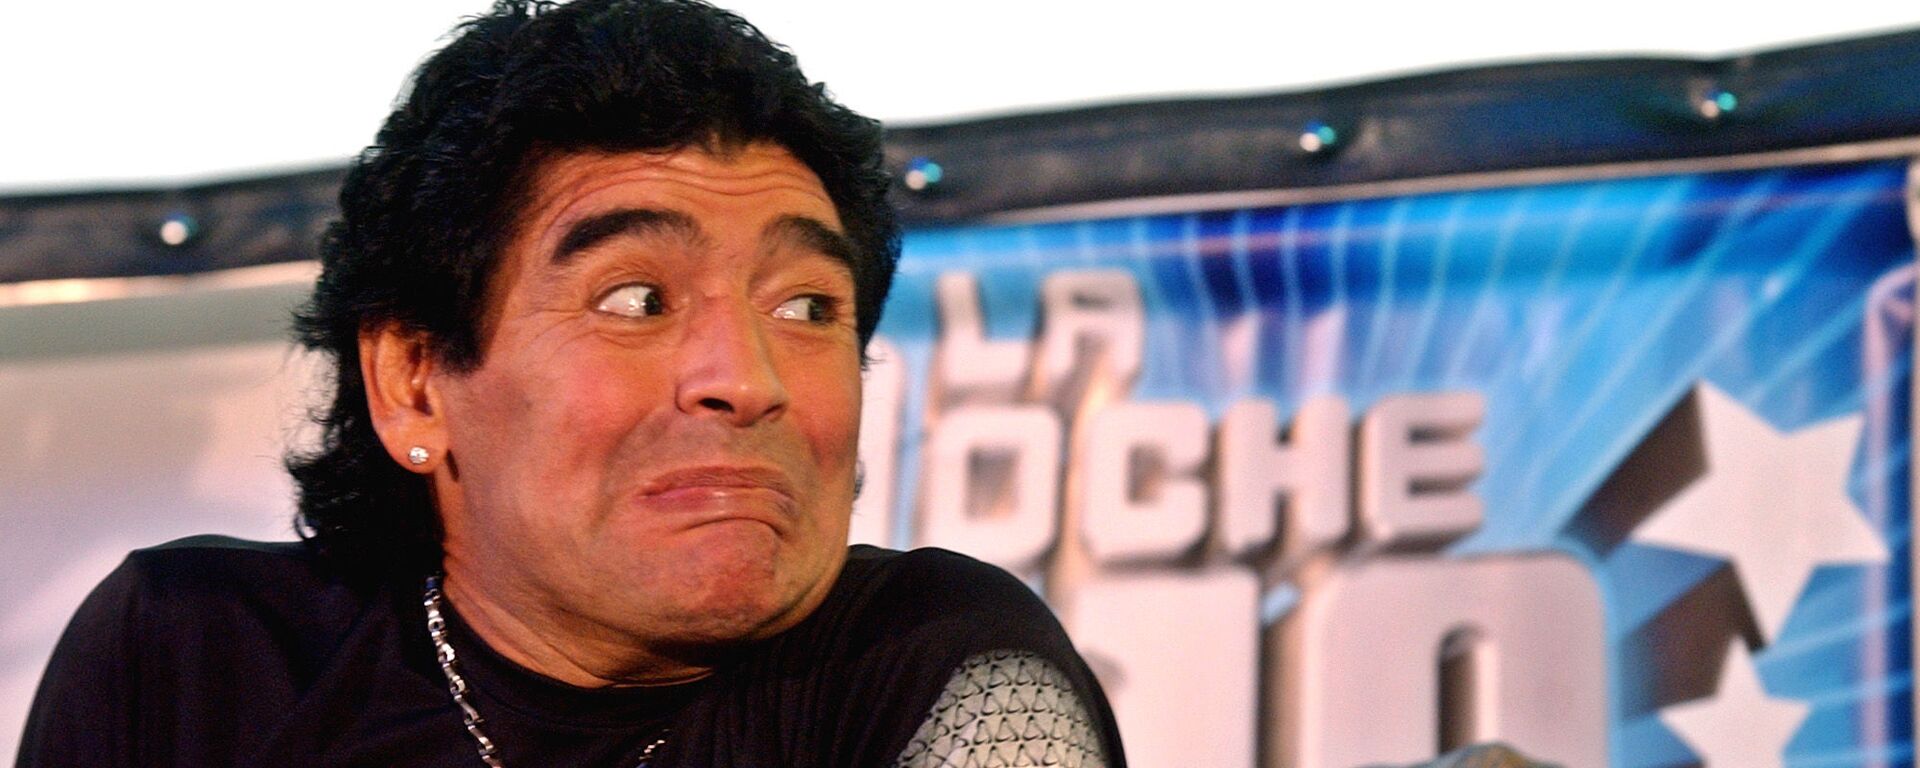 Diego Maradona en 2005, cuando conducía el programa de tv 'La Noche del Diez' - Sputnik Mundo, 1920, 15.10.2021